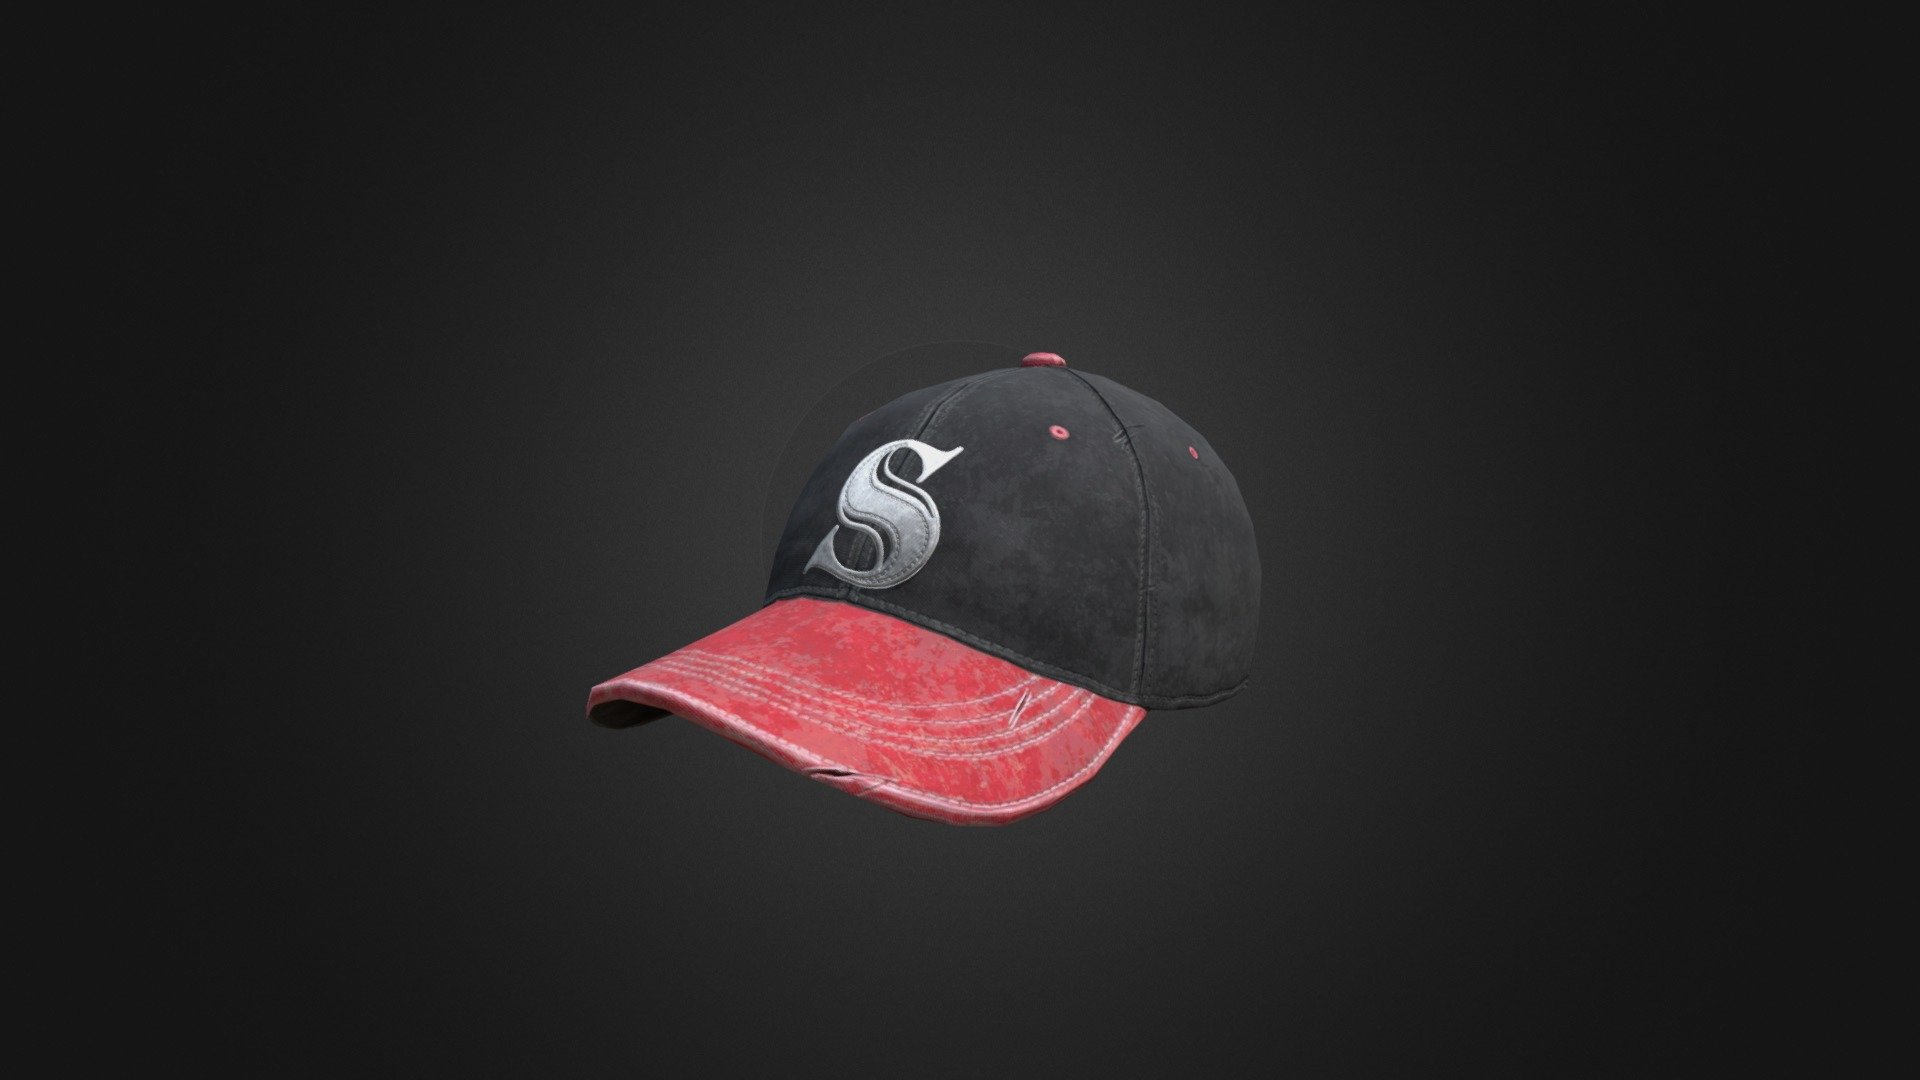 Vintage Baseball Hat (Black)

Uploaded for pubgitems.pro - Vintage Baseball Hat (Black) - 3D model by pubgitems.pro 3d model